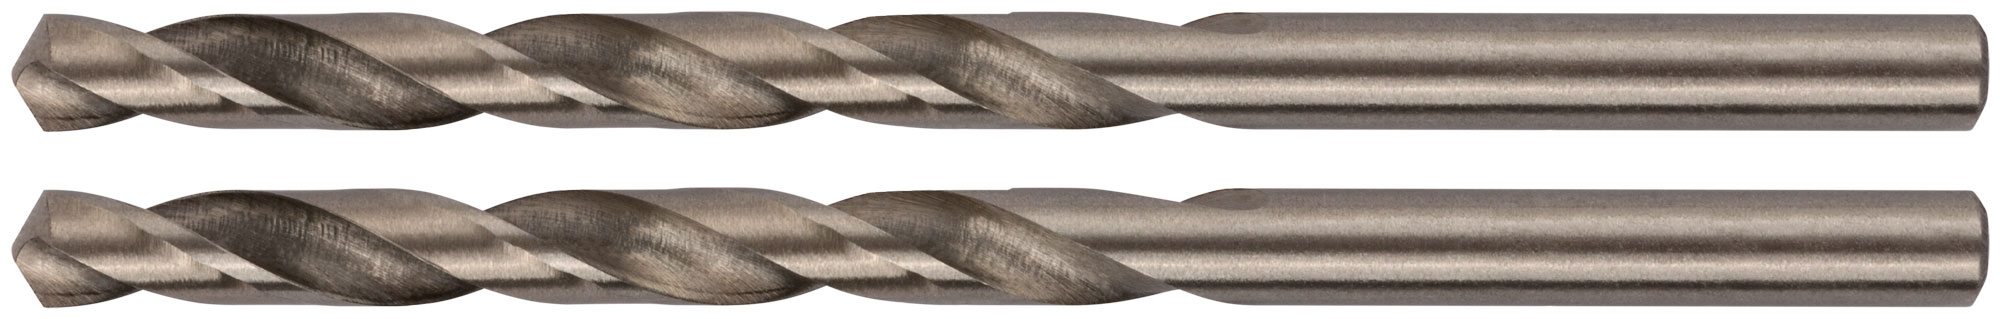 Сверла по металлу HSS полированные в блистере 4,8 мм ( 2 шт.)